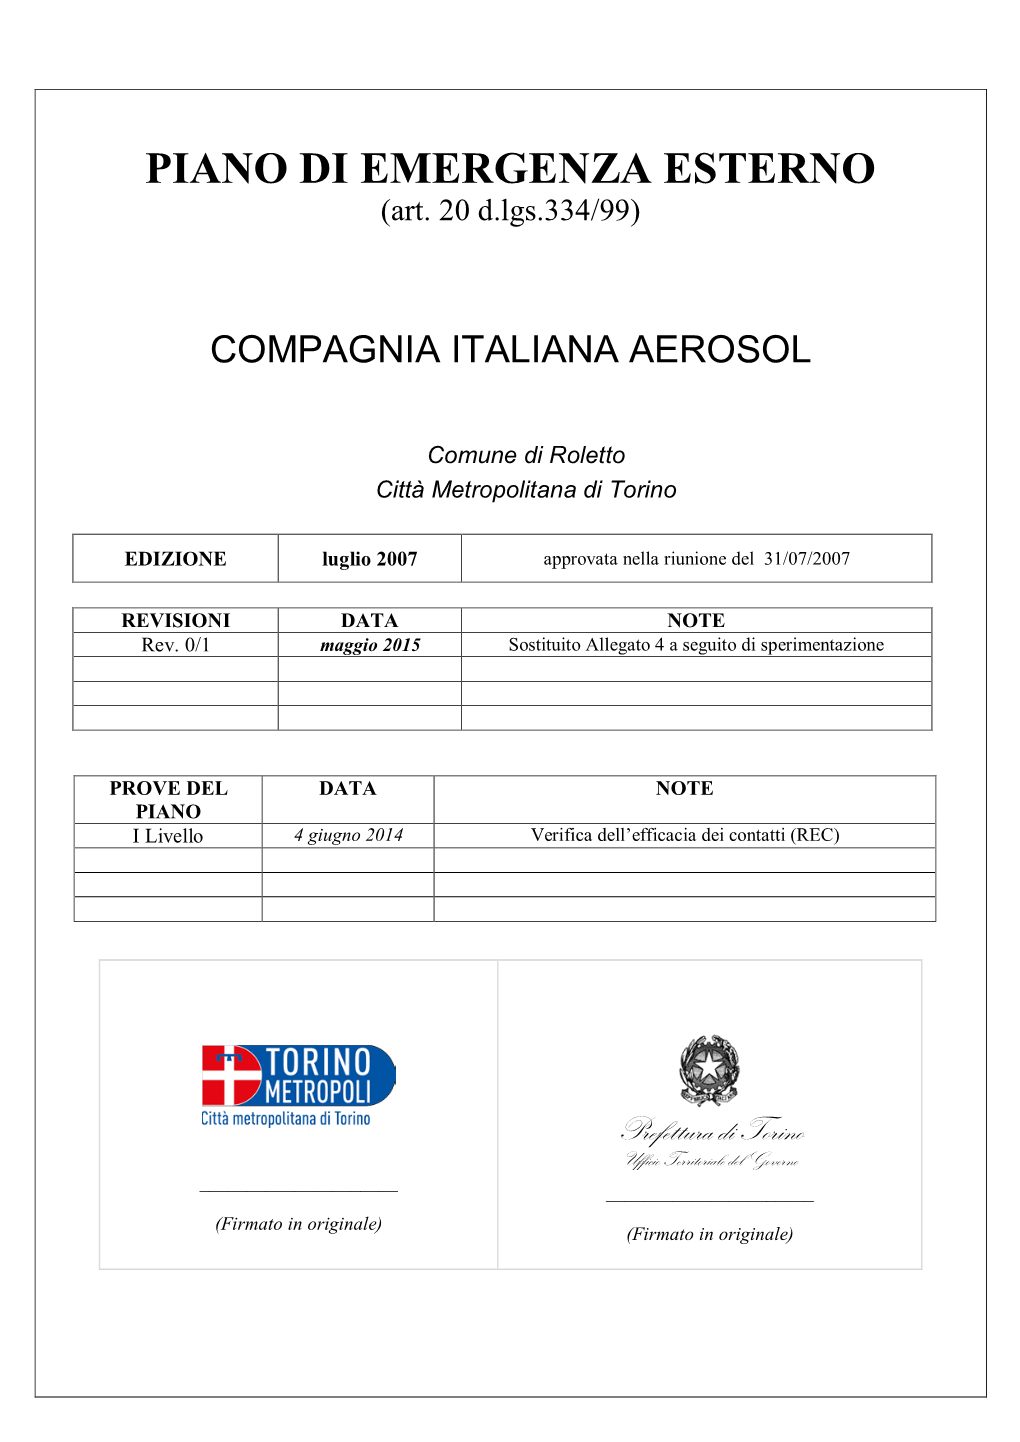 Compagnia Italiana Aerosol